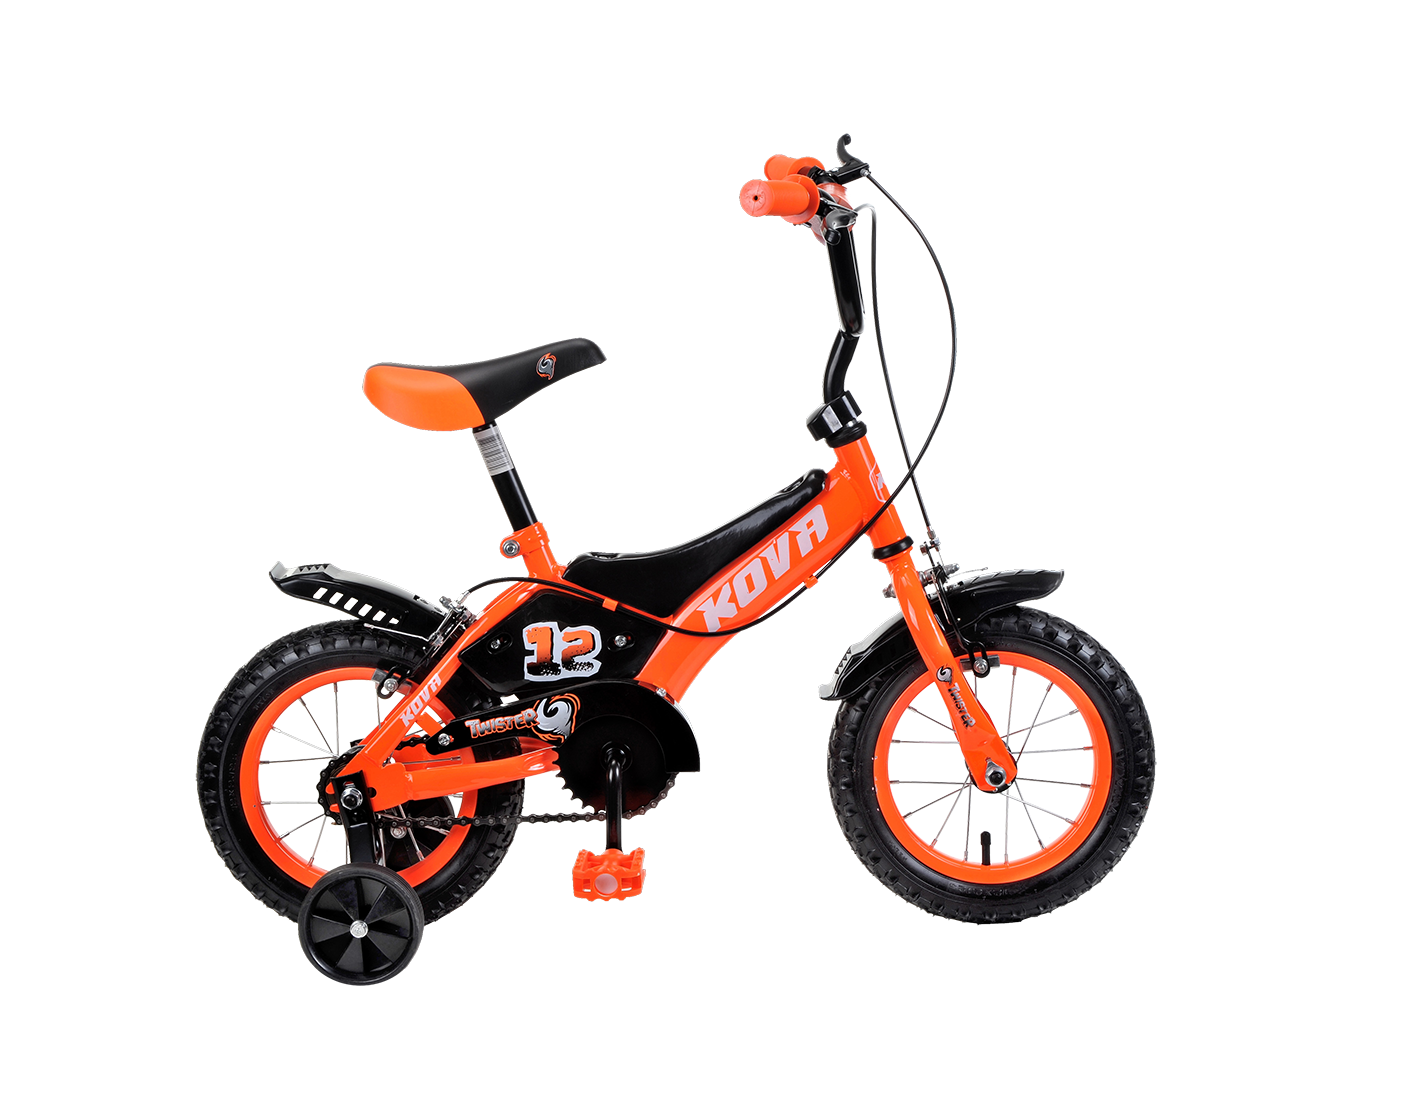 Bicicleta Kova Twister rodado 12 naranja